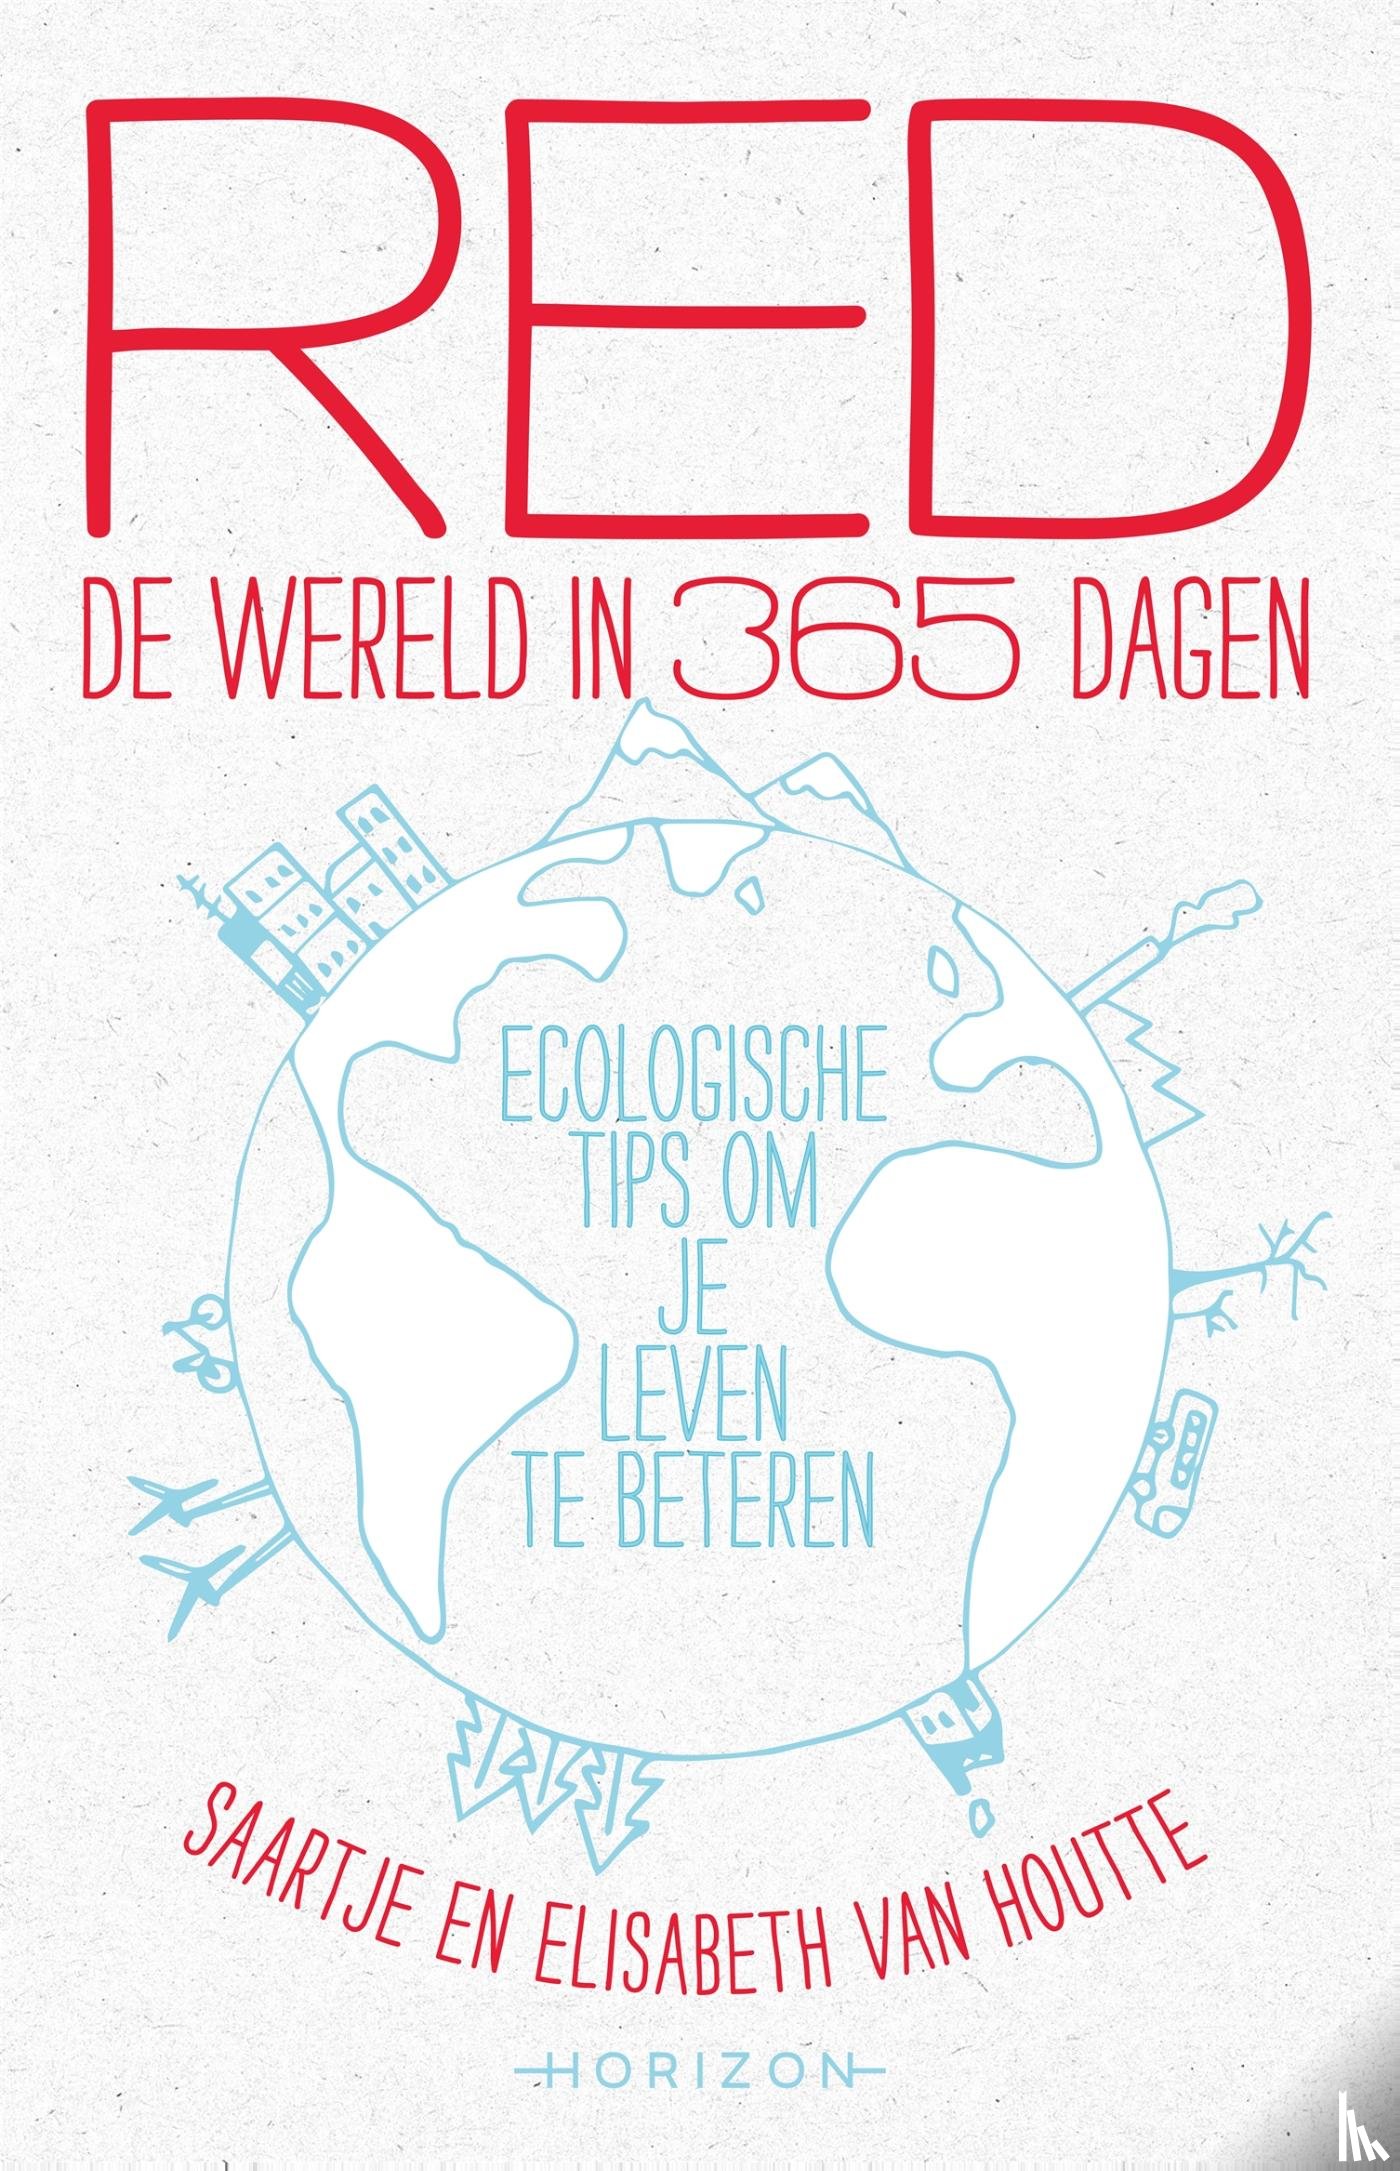 Van Houtte, Elisabeth, Van Houtte, Saartje - Red de wereld in 365 dagen